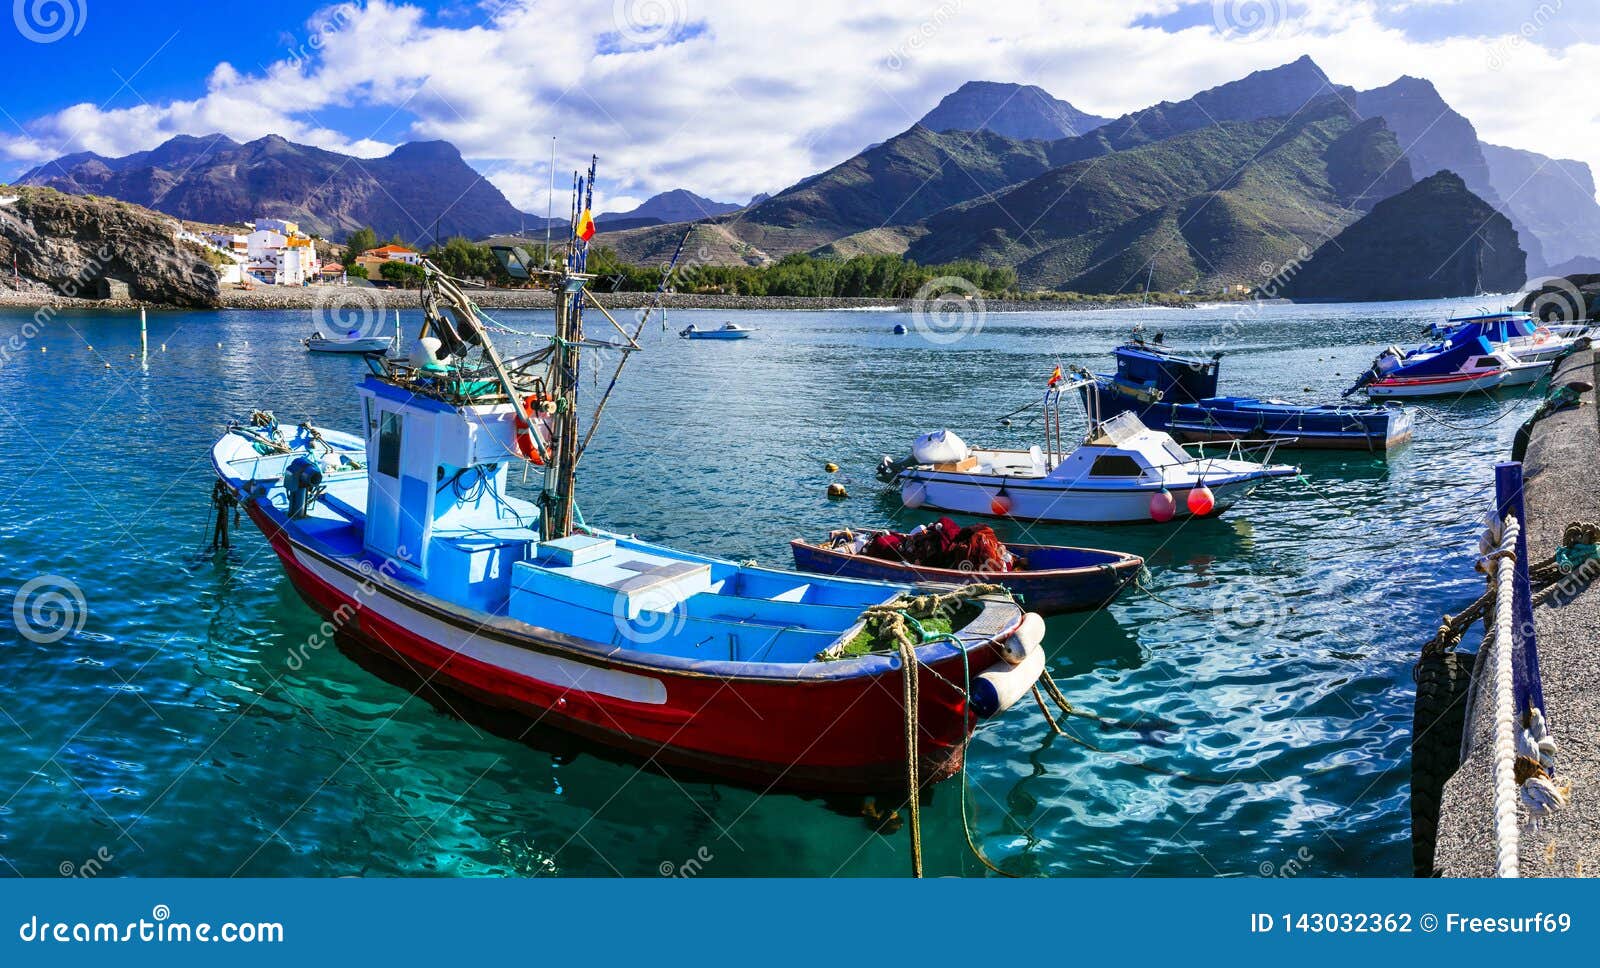 gran canaria island- picturesque traditional fishing village la aldea de san nicolas de tolentino